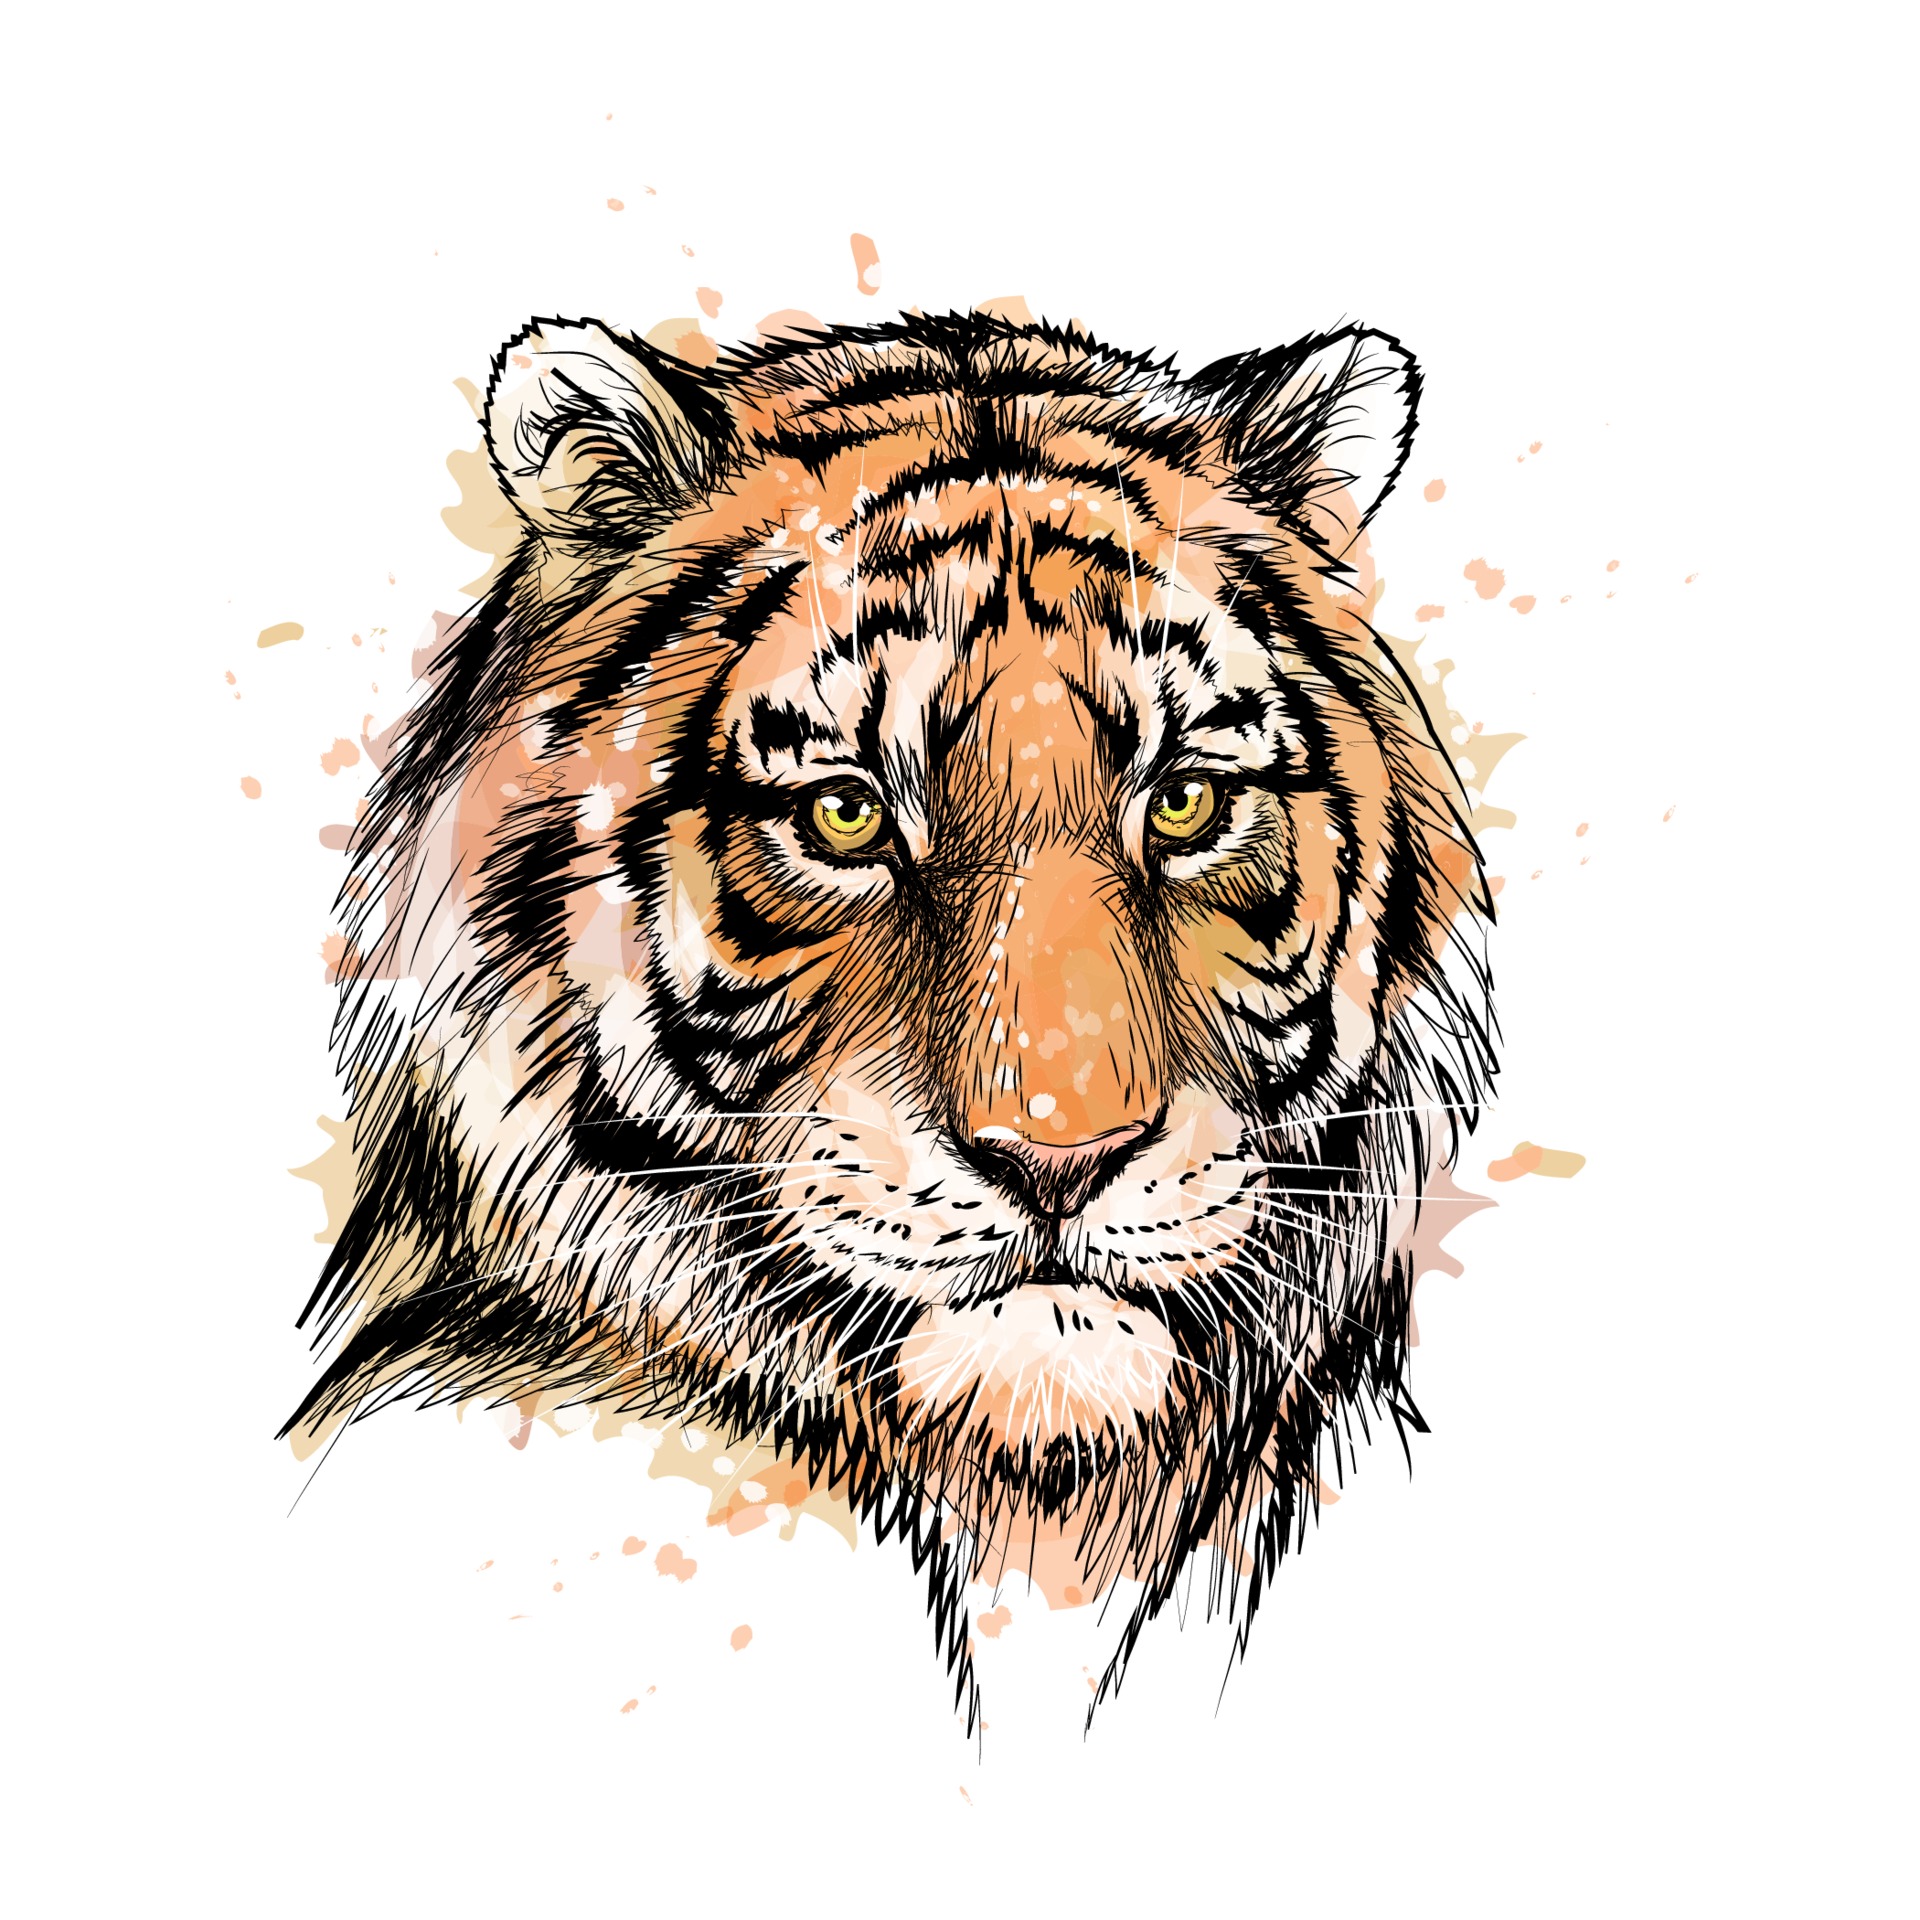 Tiger Head Drawing Stock Illustration 178054496  Shutterstock